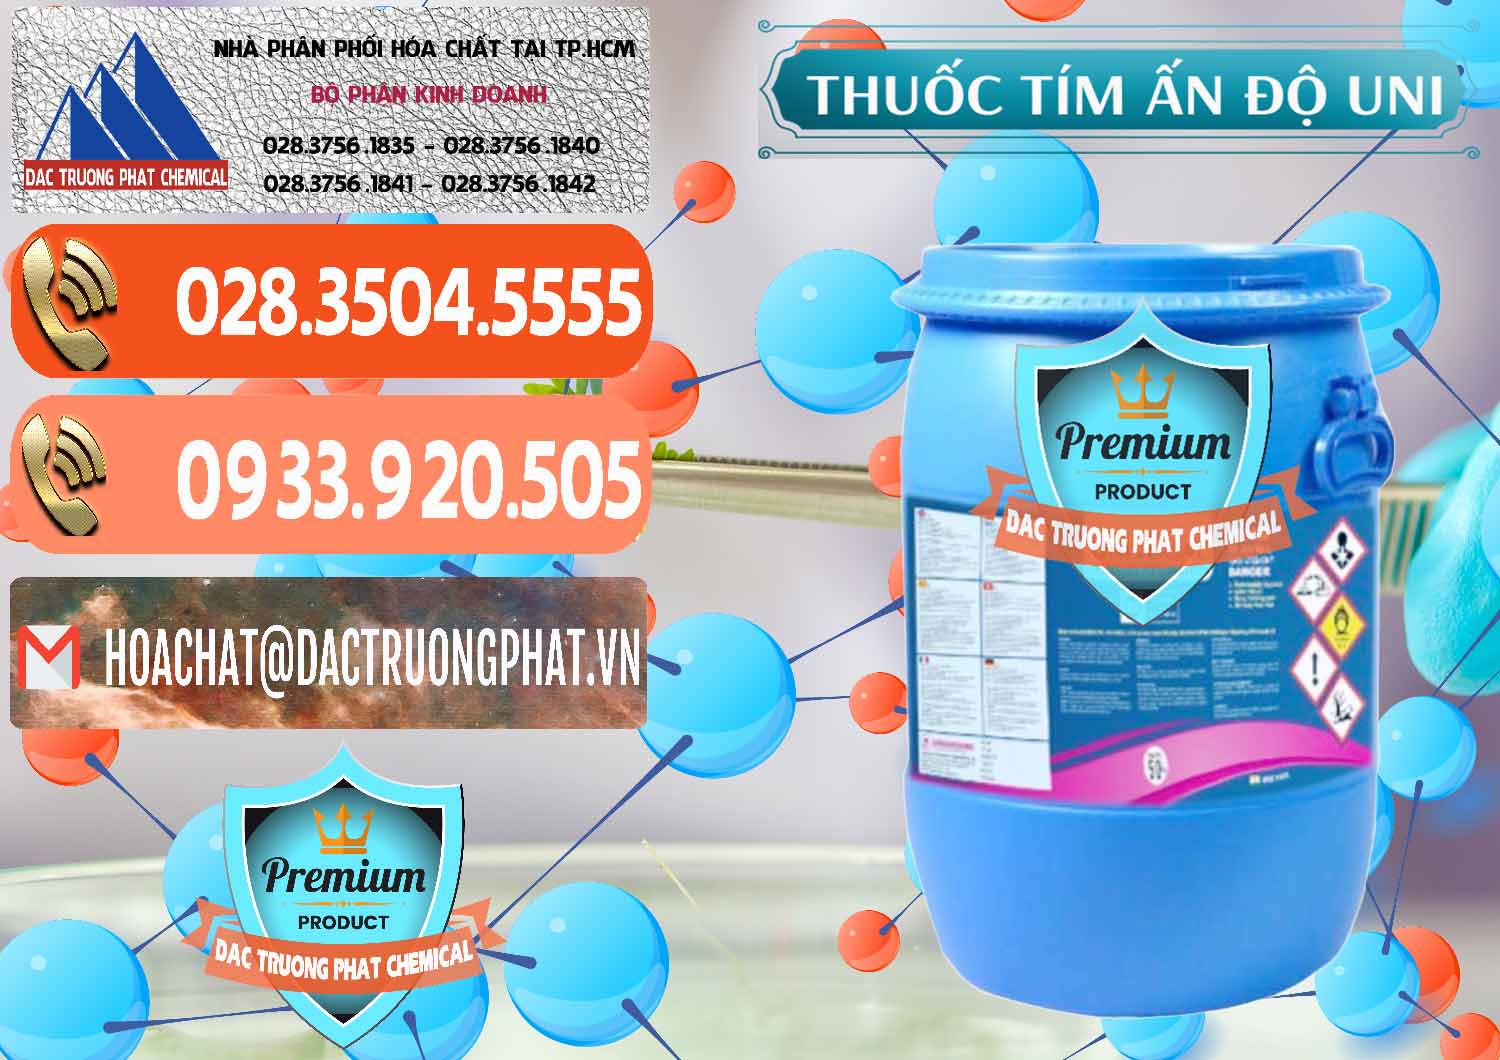 Đơn vị kinh doanh & bán Thuốc Tím - KMNO4 Universal Ấn Độ India - 0419 - Cty bán - cung cấp hóa chất tại TP.HCM - hoachatmientay.com